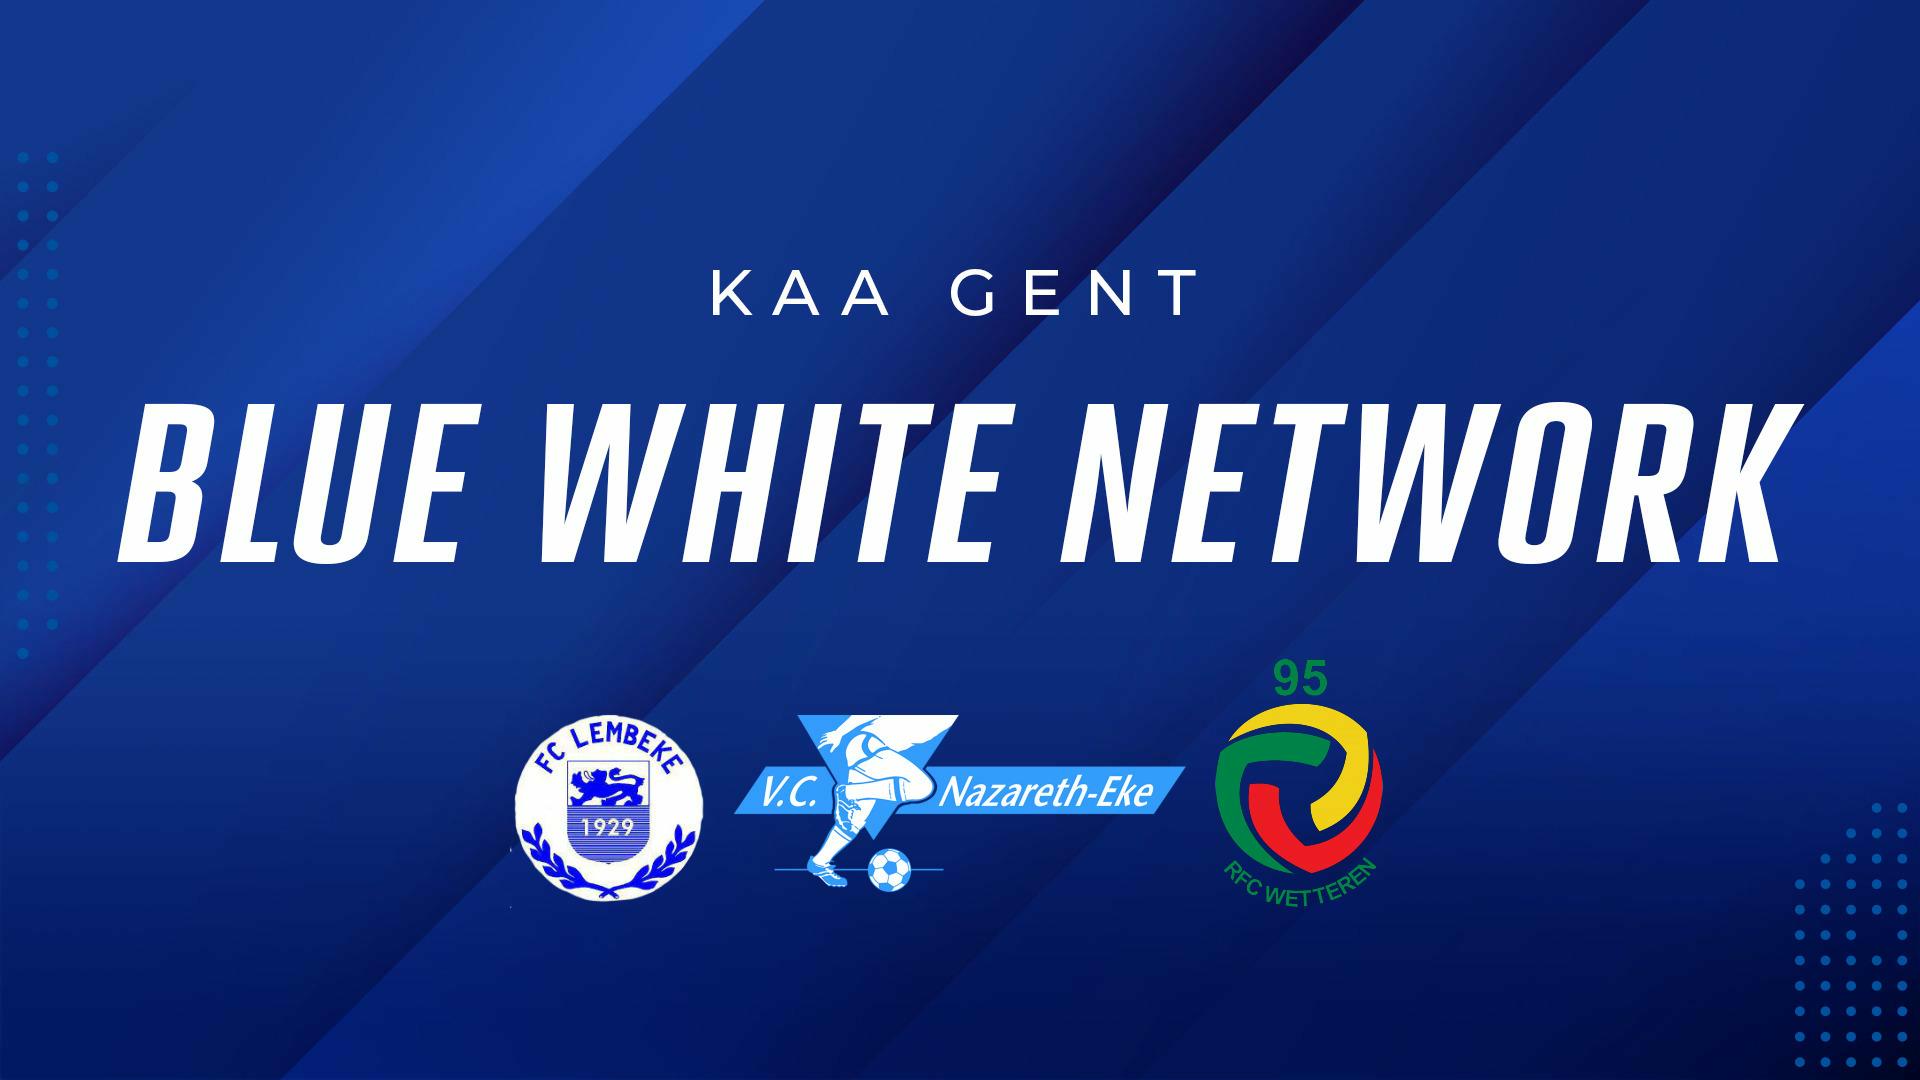 Het Blue White Network groeit